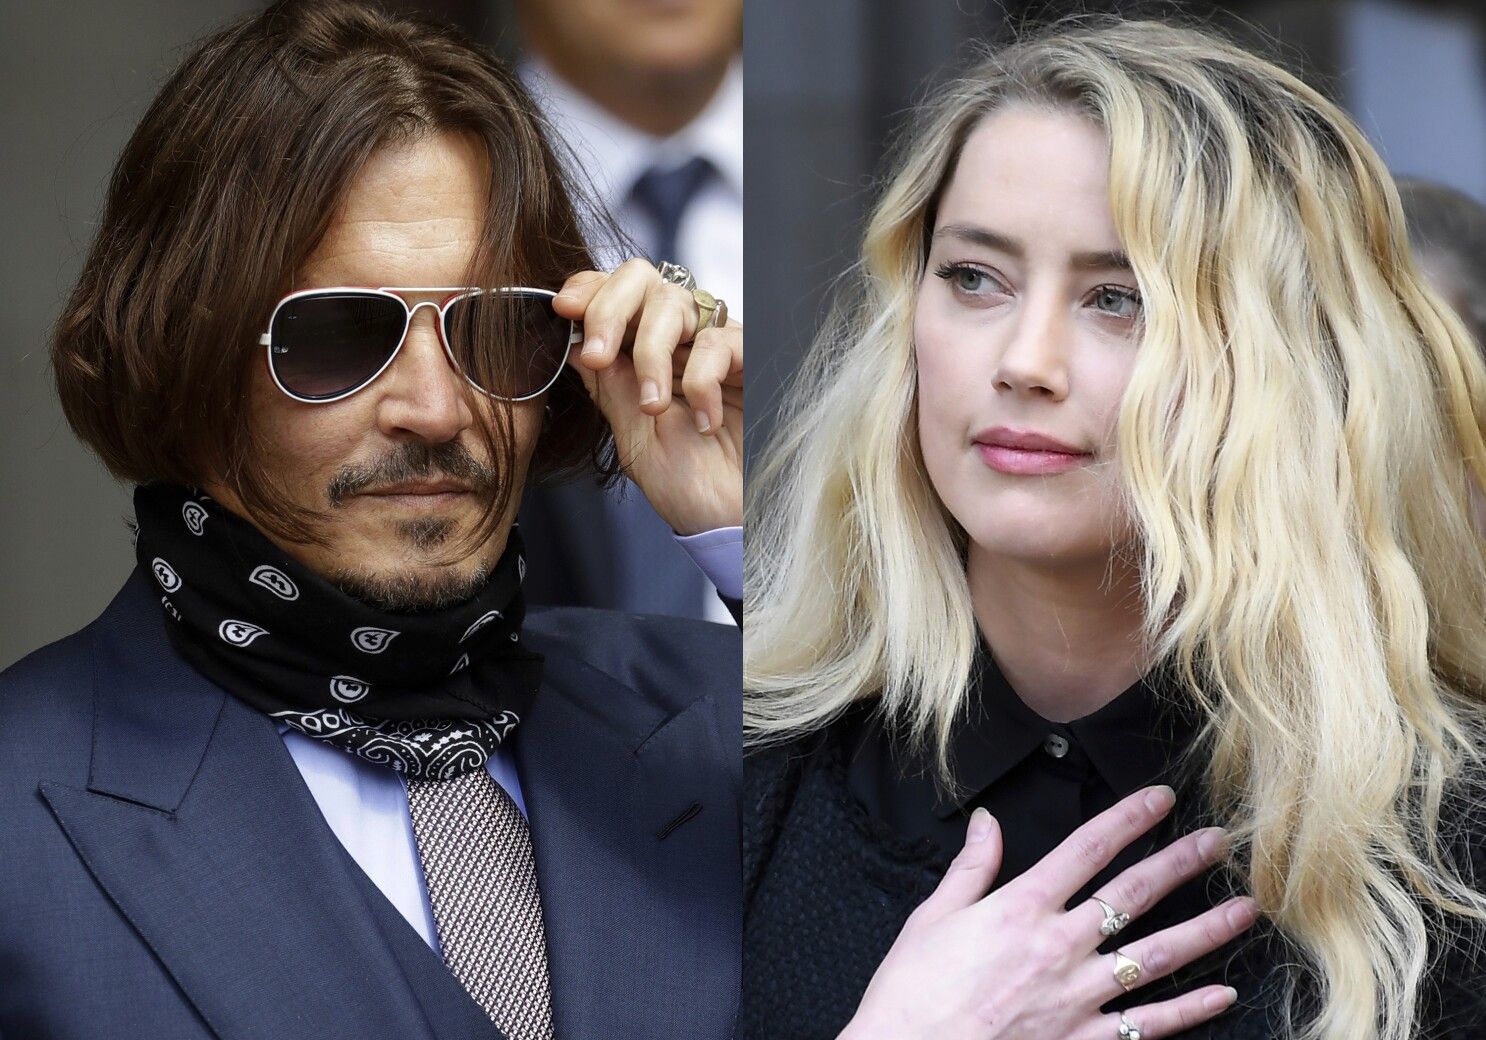 ▶ El jurado sentencia que Amber Heard y Johnny Depp se difamaron mutuamente